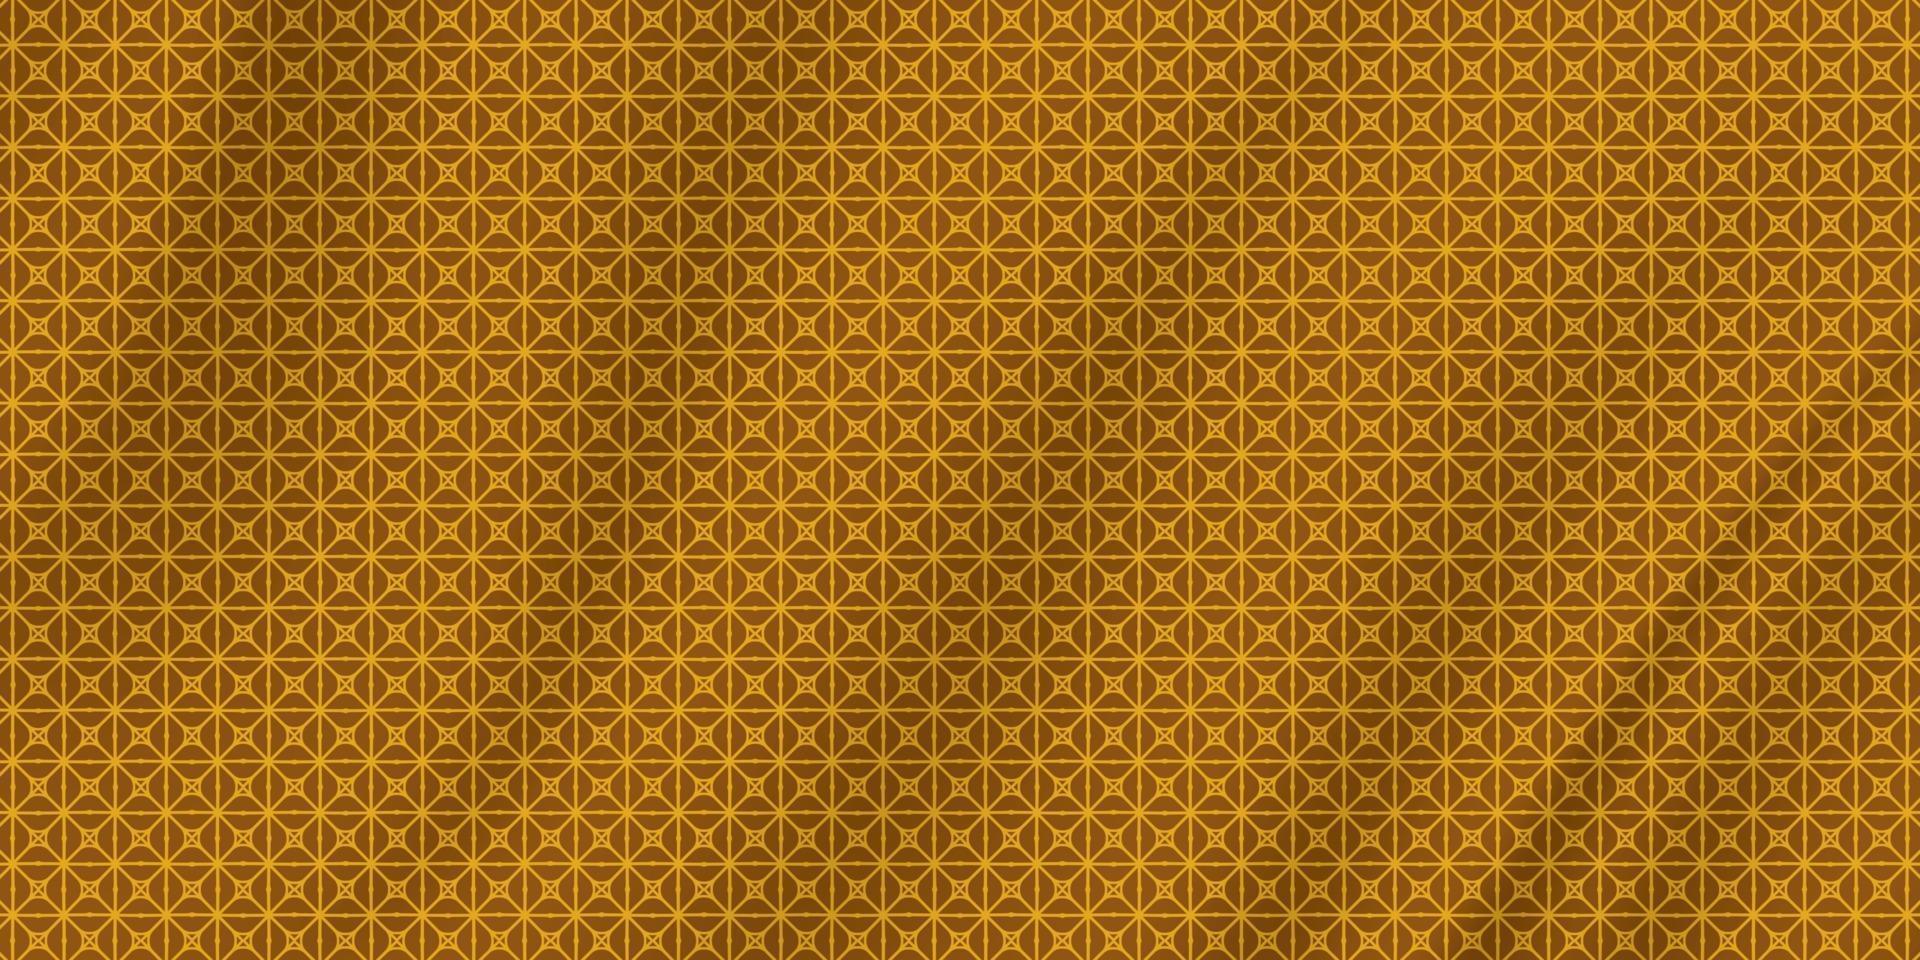 padrão geométrico sem costura tradicional com textura de tecido de seda vetor